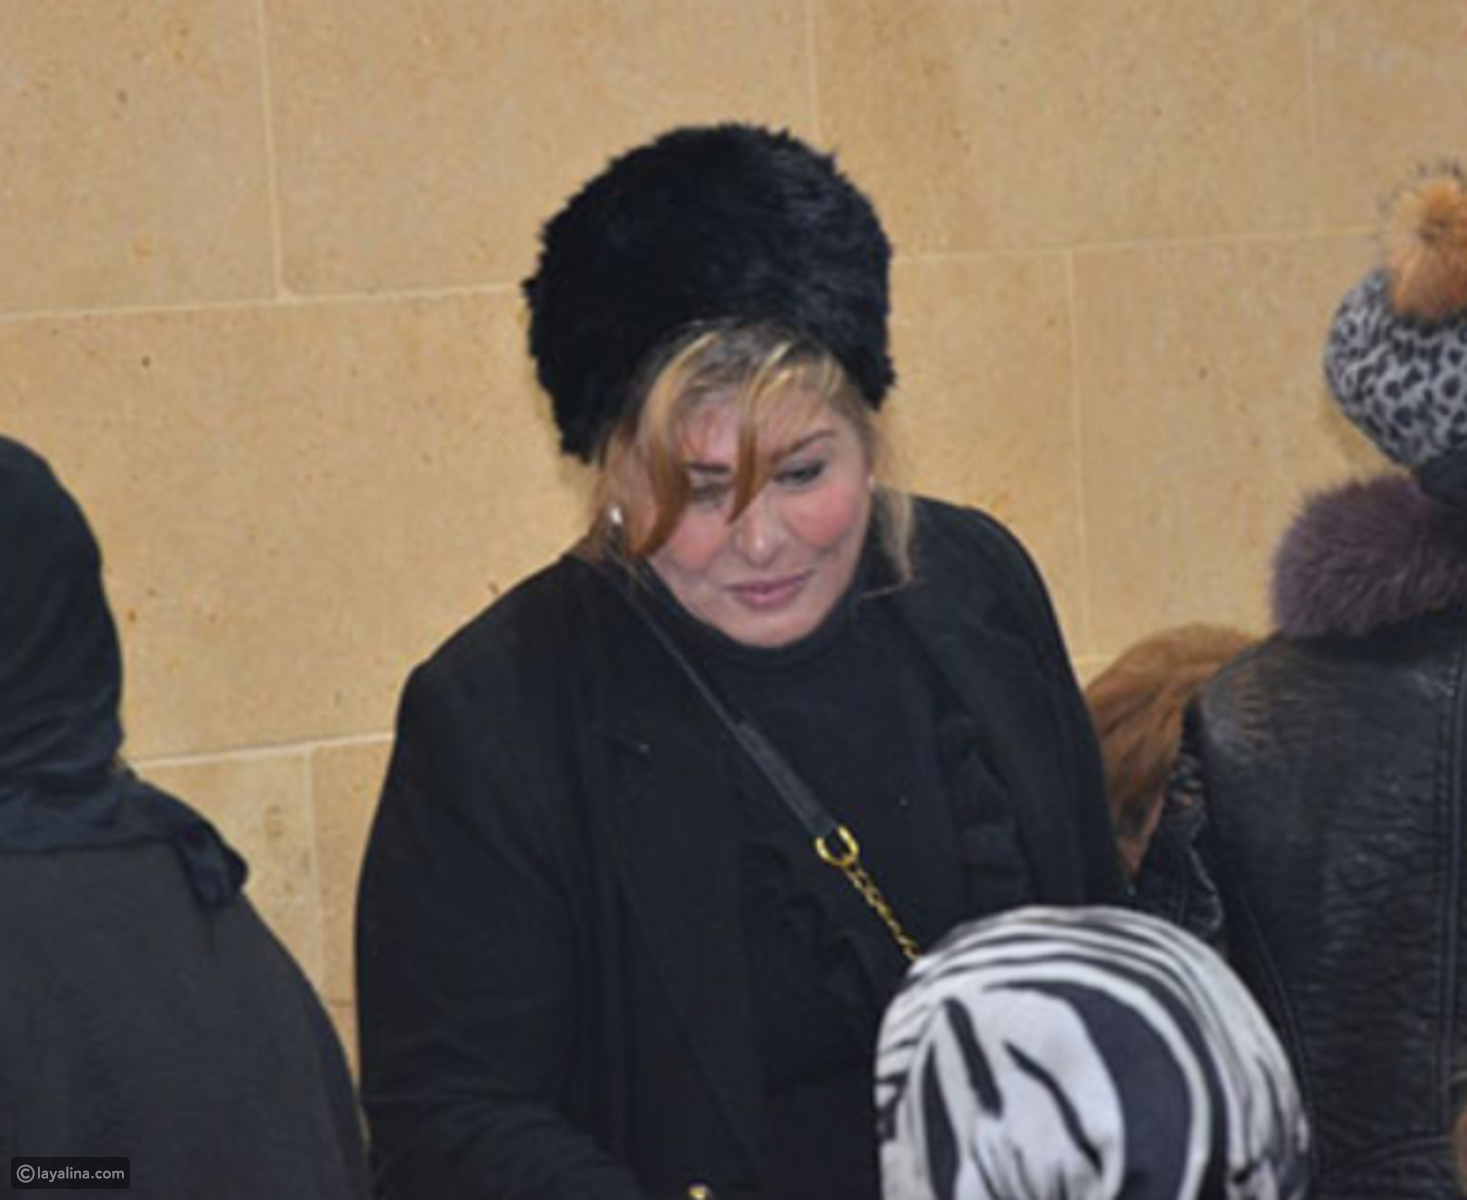 مكياج وقبعة سهير رمزي يسببان الانتقادات في عزاء شقيقة رجاء الجداوي